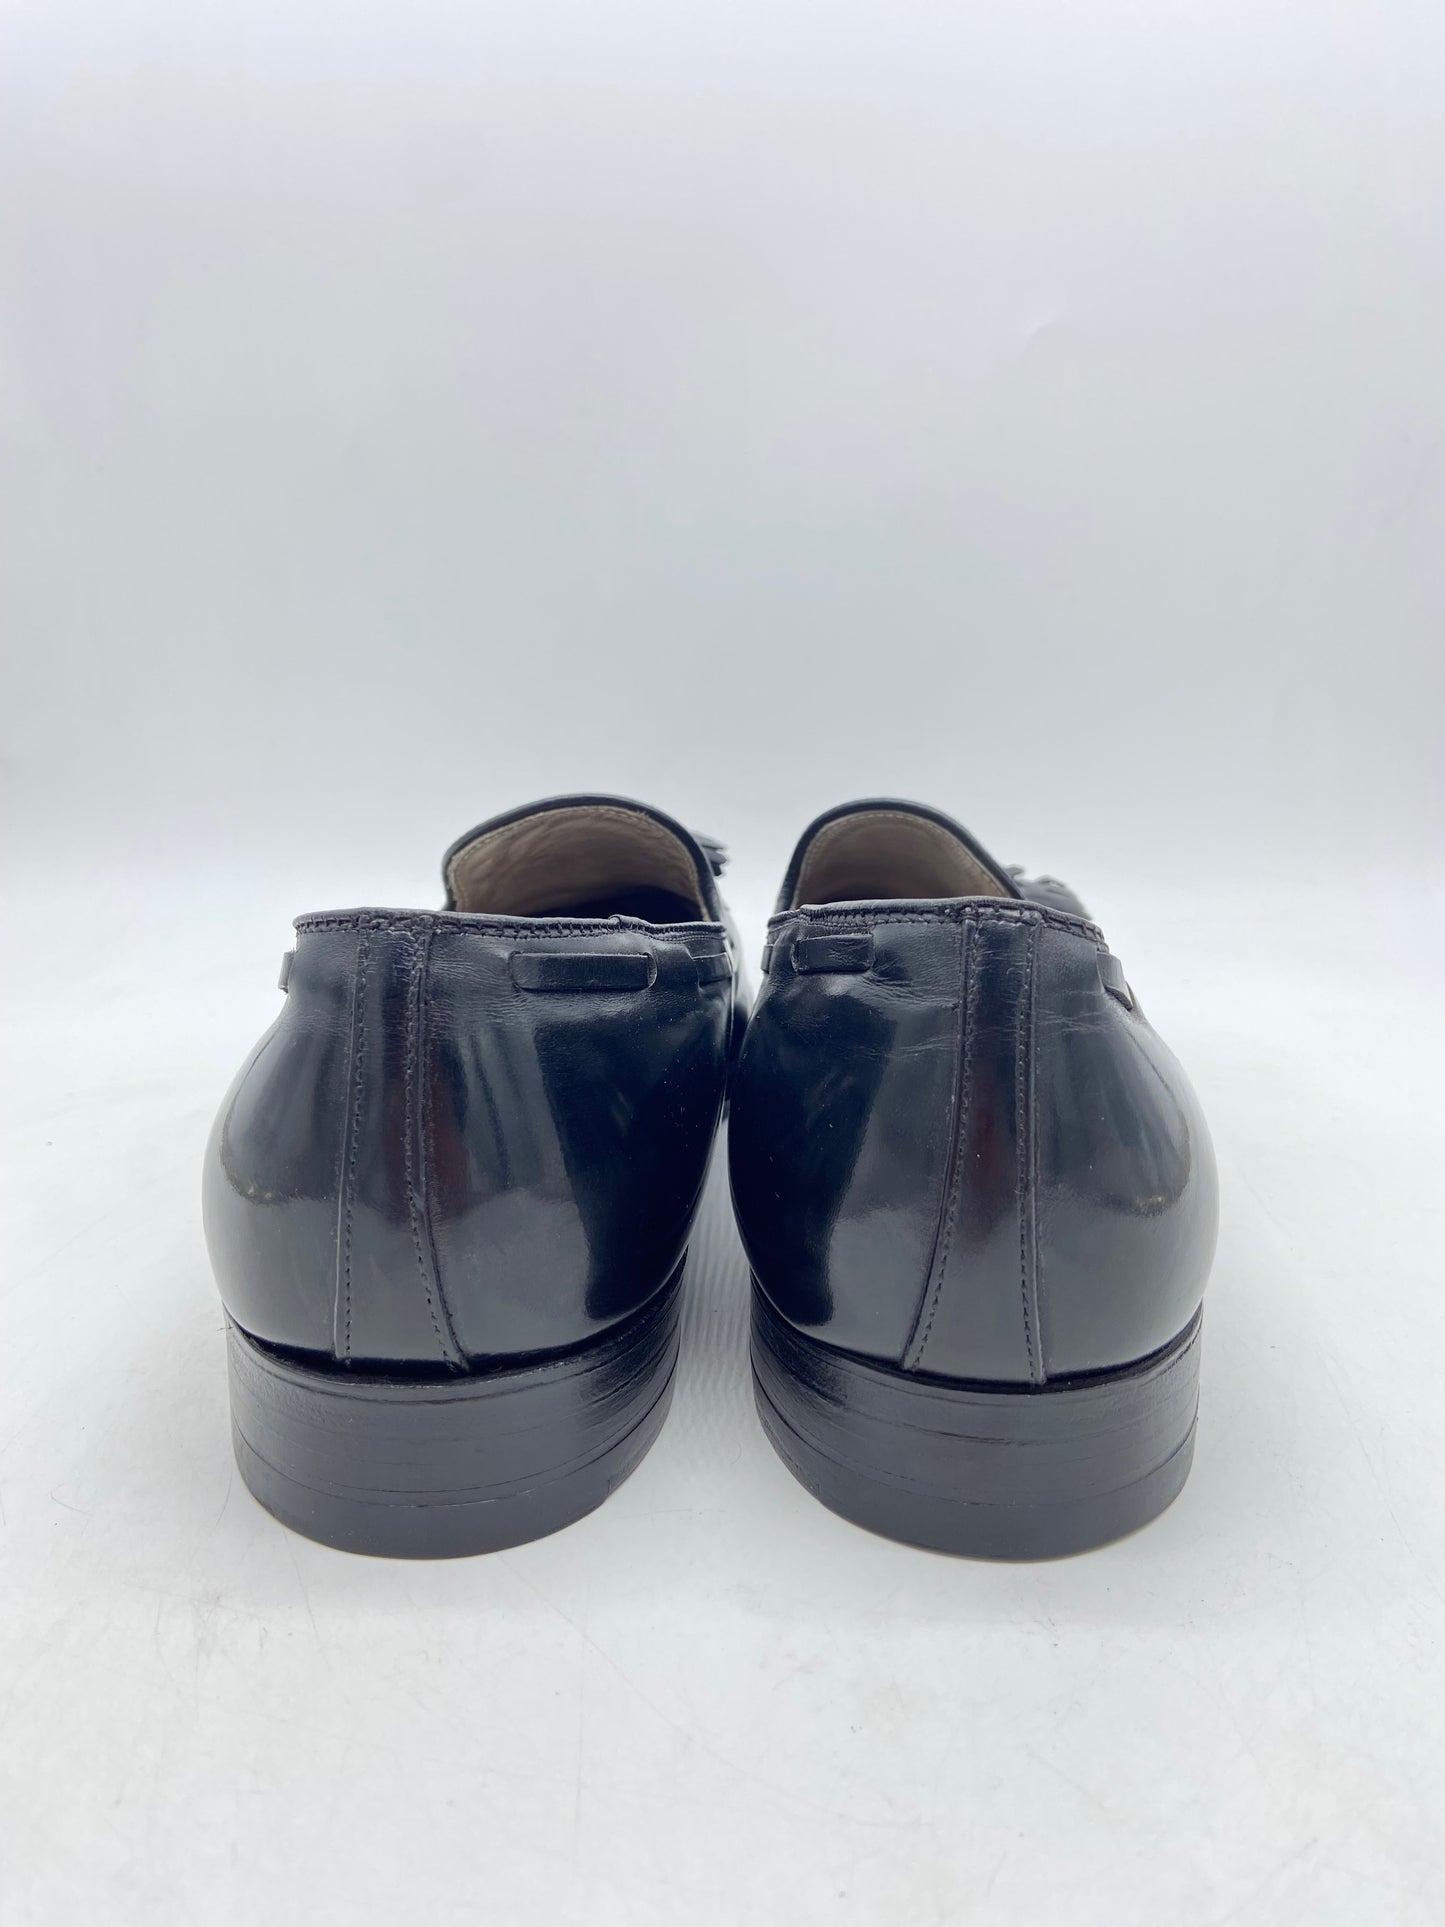 Alden Tassel Loafers Black Loafers Sz 11M/12.5W